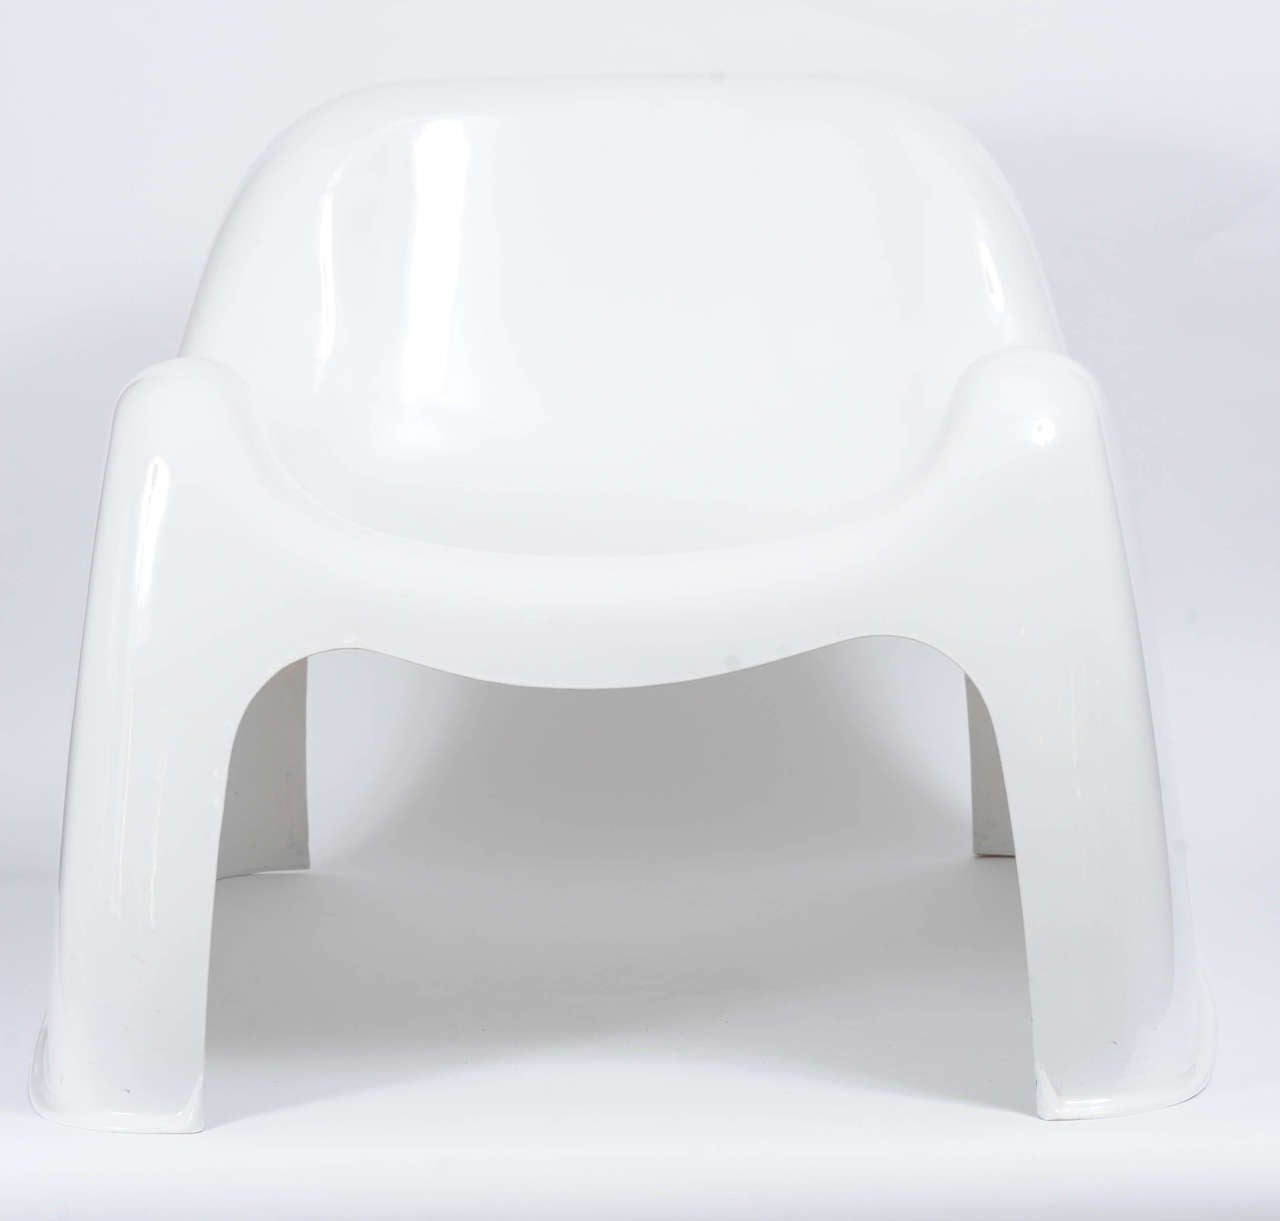 Der Toga-Stuhl wurde 1968 von Sergio Mazza für Artemide entworfen. 
In einem Stück gegossenes Fiberglas. Ontwerp uit 1968
Die Hauptrolle in der Fernsehserie Space 1999.